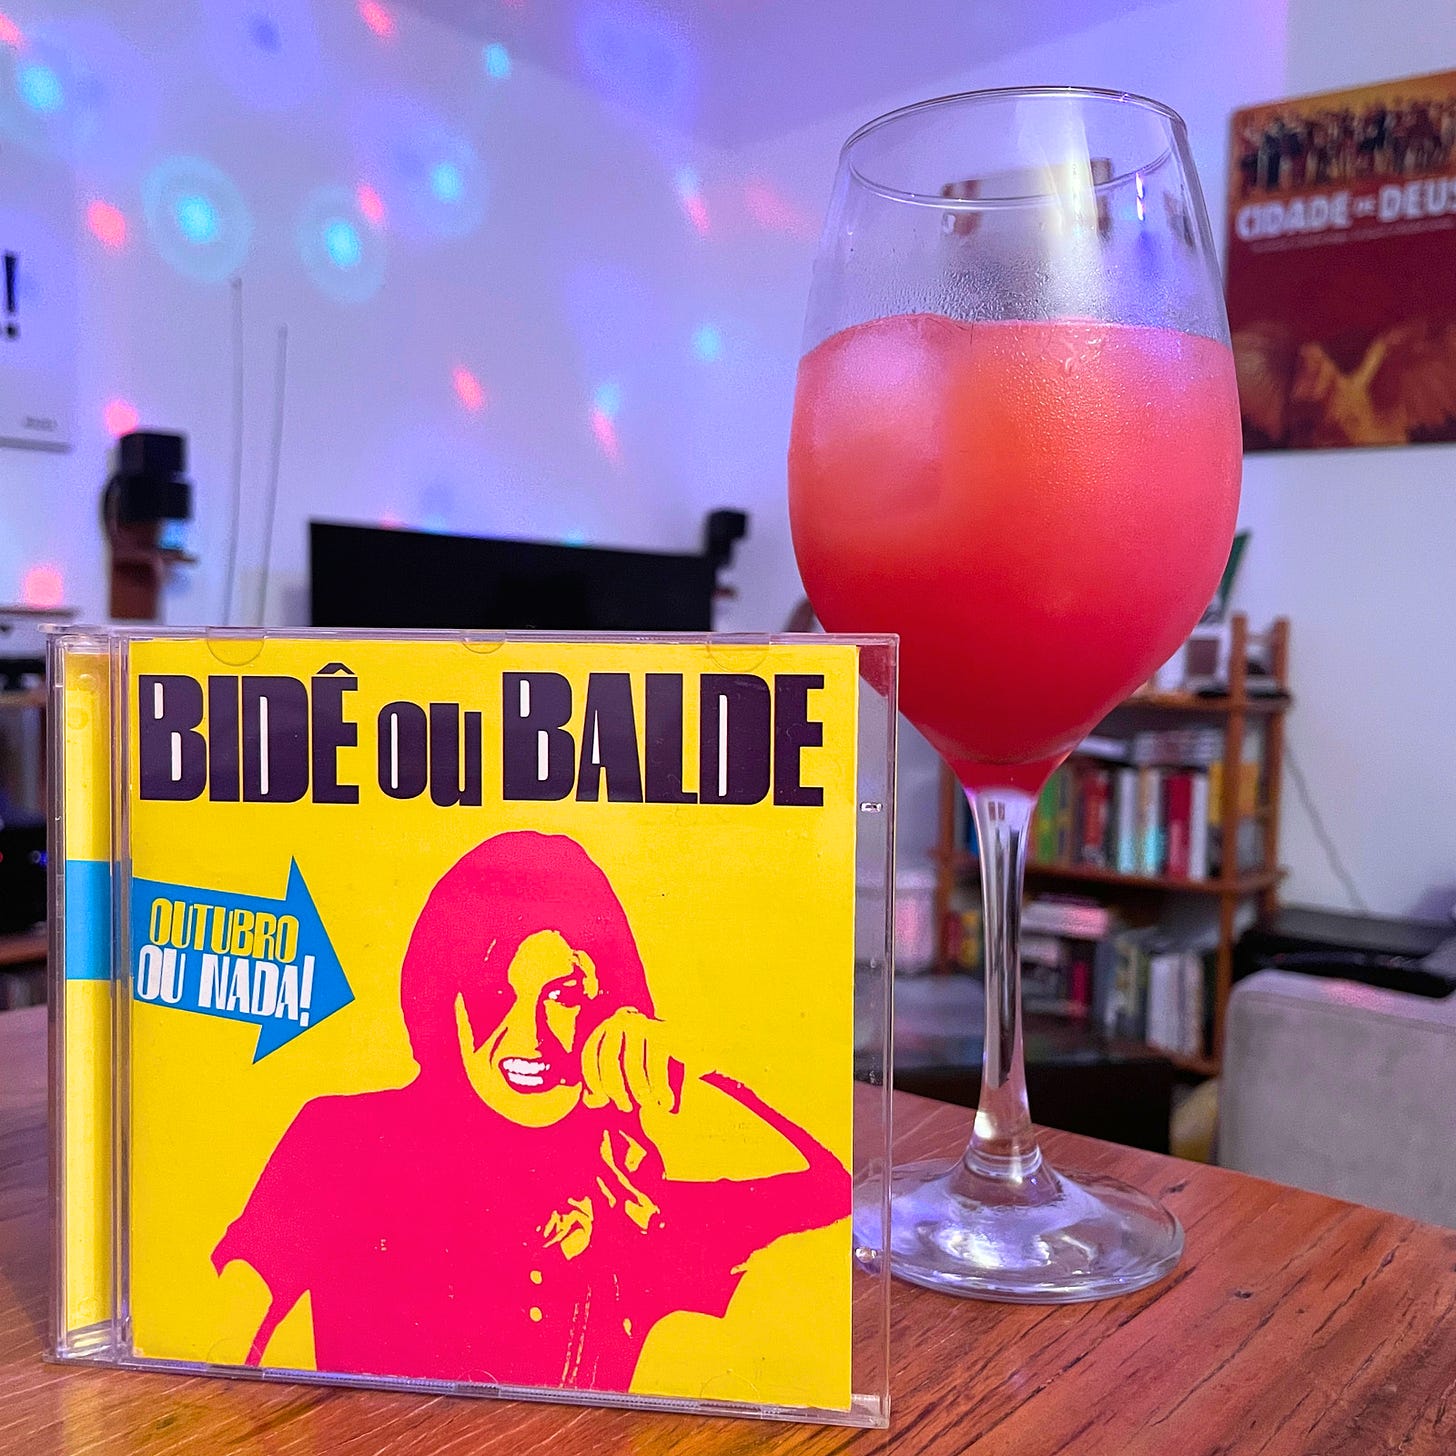 Texto mostra o disco Outubro ou Nada, de fundo amarelo e uma moça em grafismos rosas, uma taça de vinho com o drink Garibaldi, e ao fundo, uma sala de estar bagunçada